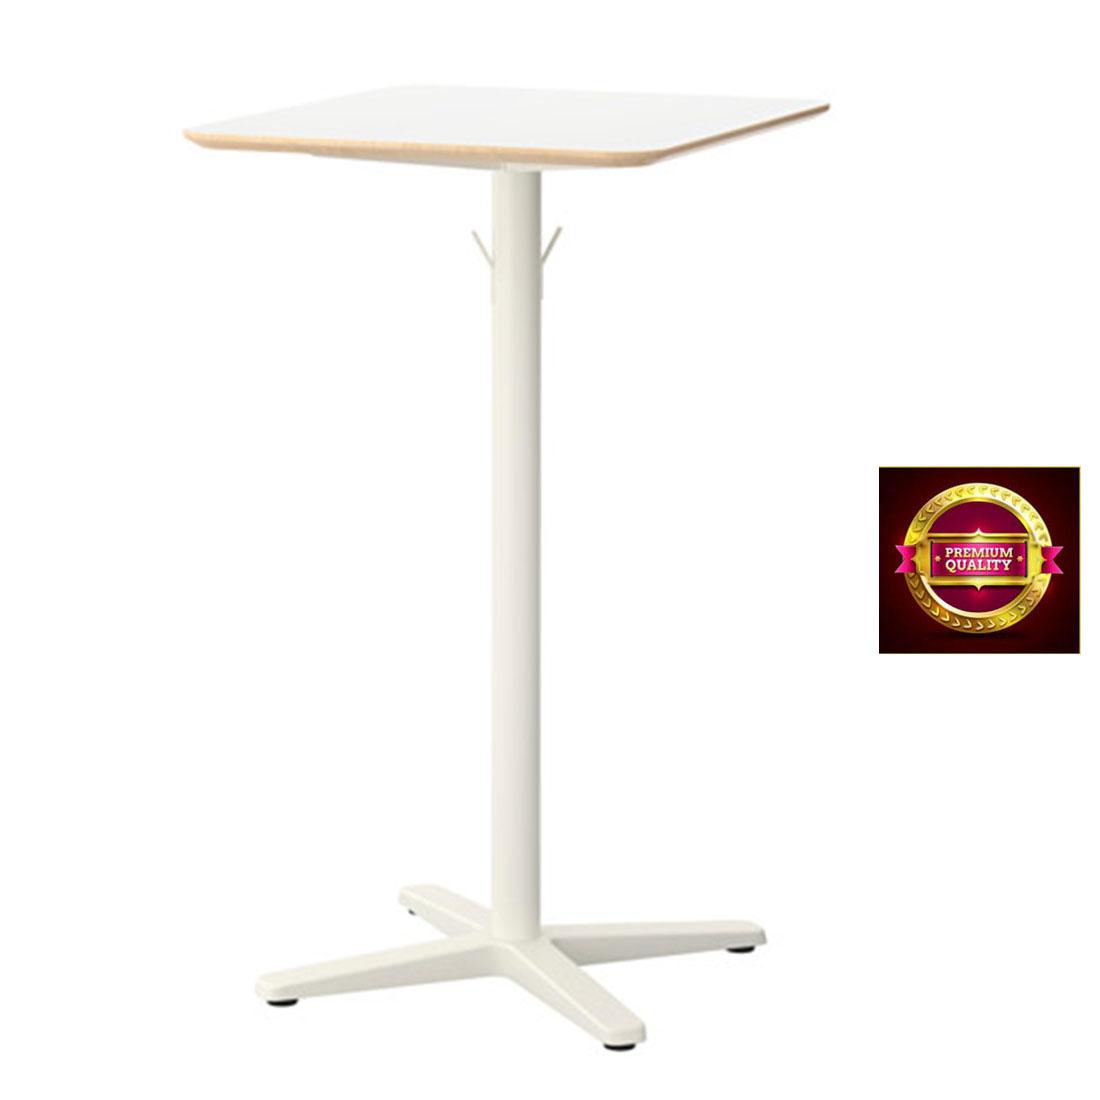 โต๊ะบาร์เมลามีน ทนความร้อนและรอยขีดข่วนได้ดี สีขาว 70x60 cm